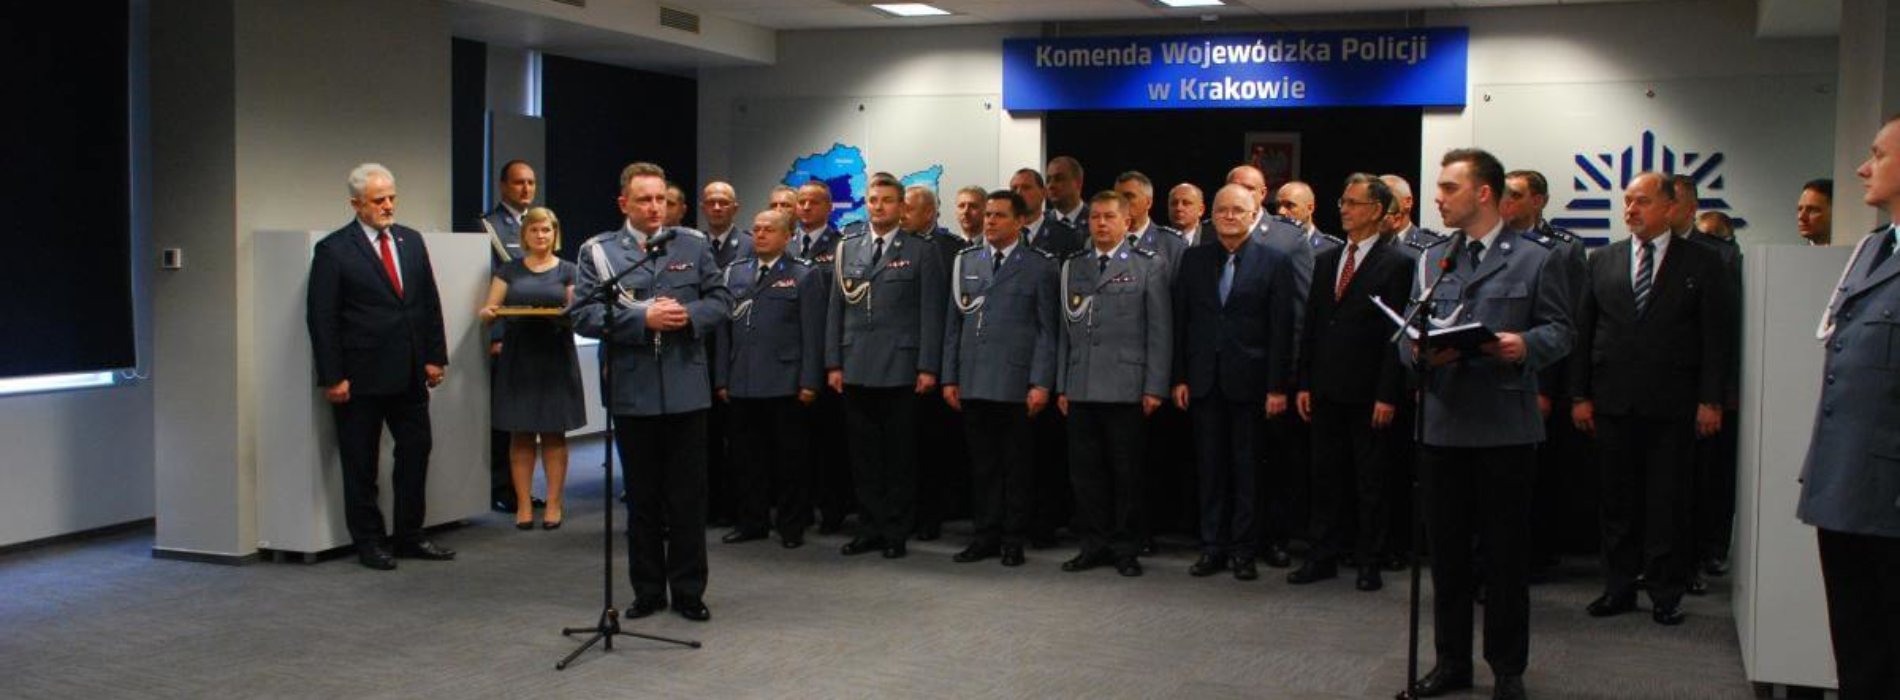 Nagrody Komendanta Głównego Policji dla wyróżniających się policjantów w Małopolsce